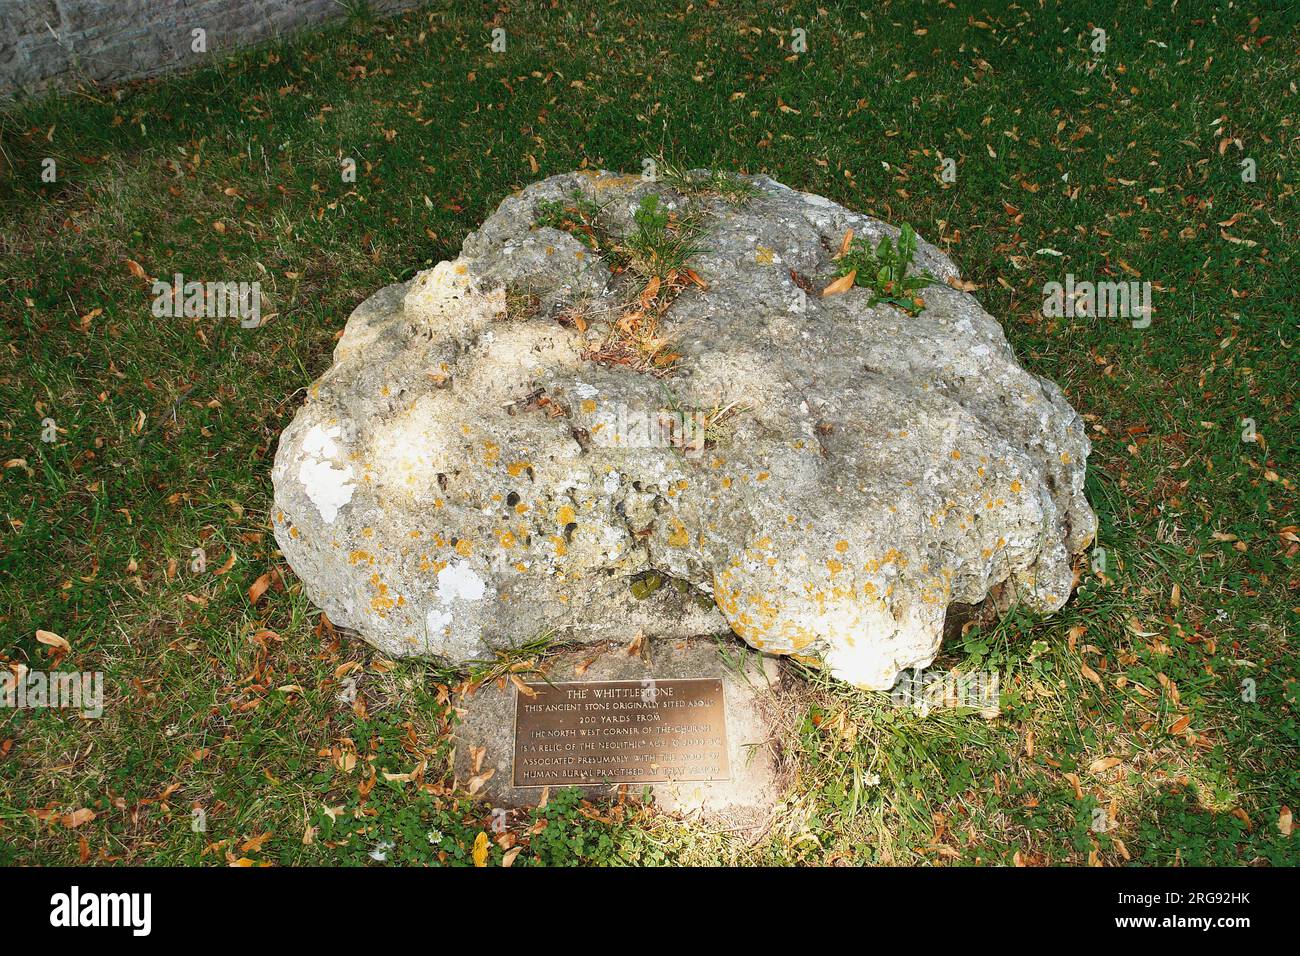 The Whittlestone, una pietra o menhir a Lower Swell, vicino a Chipping Norton, Gloucestershire. È anche conosciuto come Whistlestone, Wissel Stone e Wittelstone. La placca spiega che la pietra è una reliquia dell'età neolitica, circa 2000 a.C., e ha qualche connessione con la sepoltura umana. Foto Stock